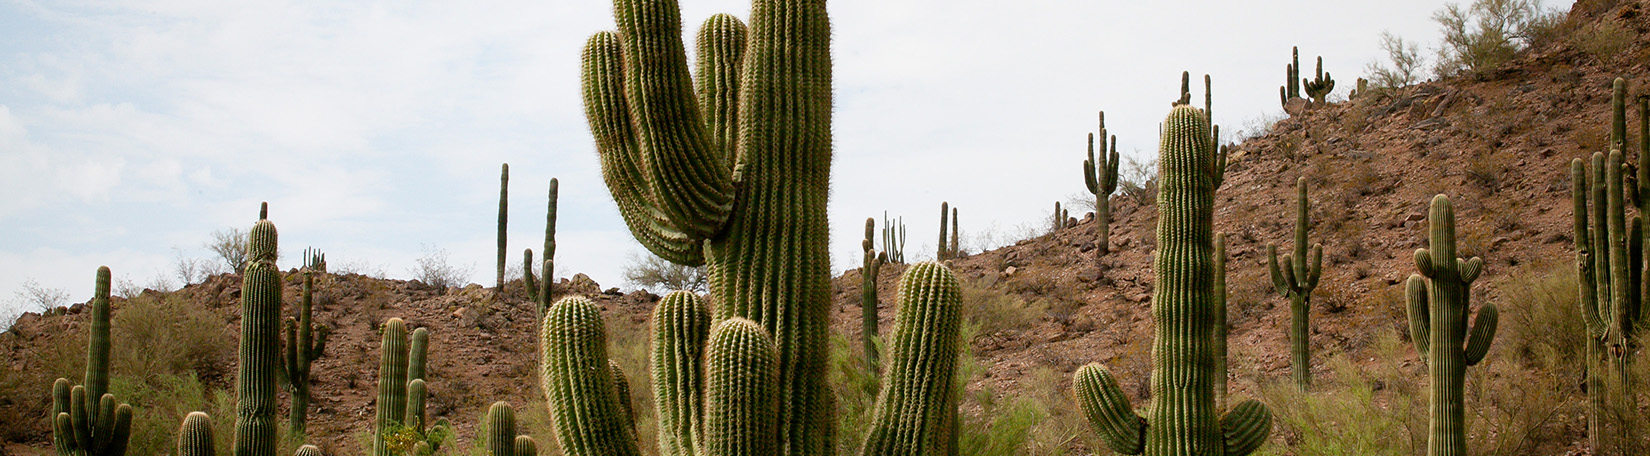 Salvando el desierto de plantas de cactus 